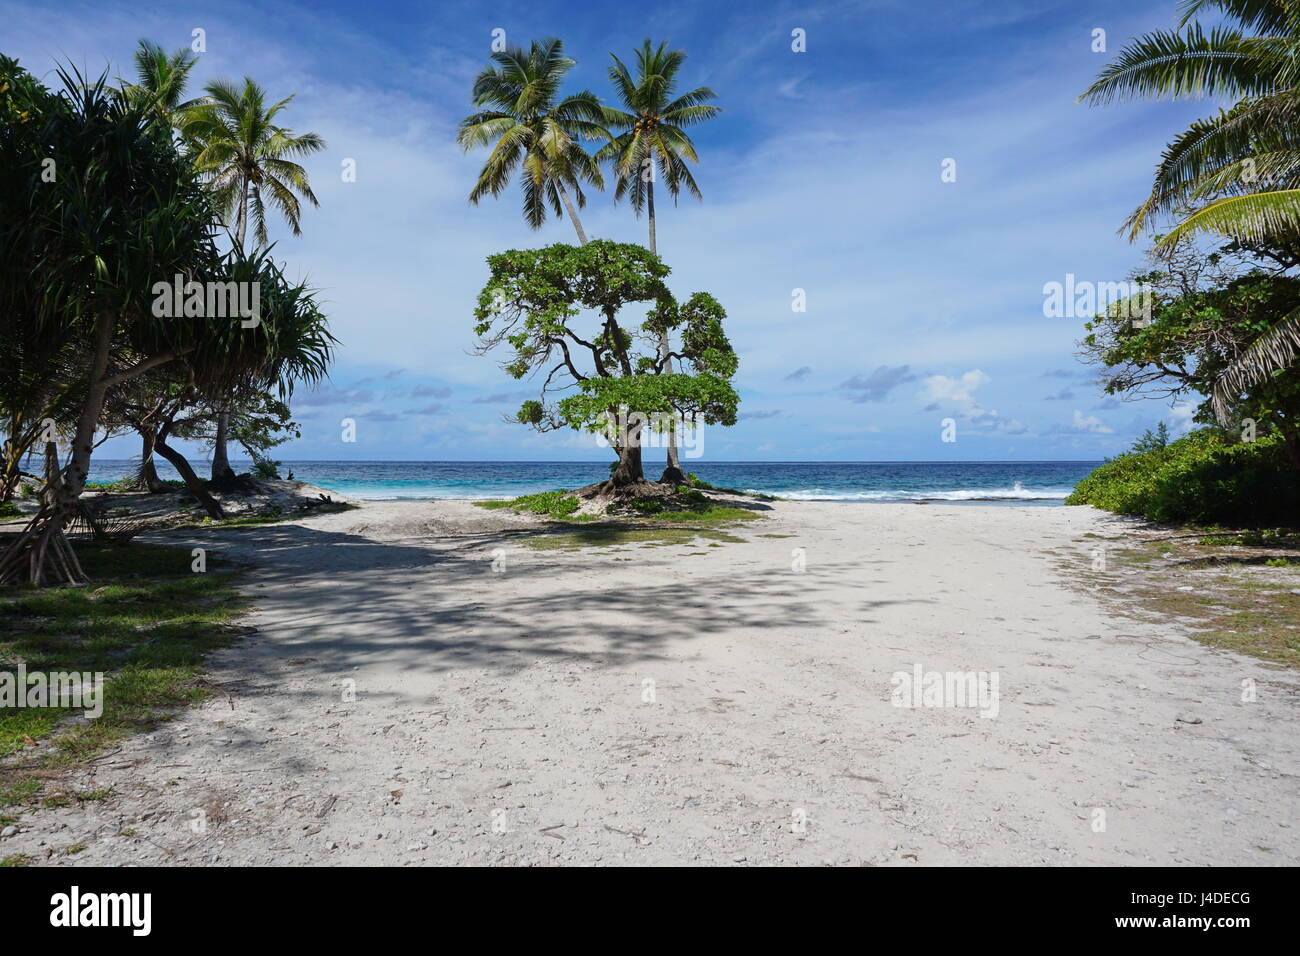 Weg zum Ozean mit tropischer Vegetation an der Küste der Insel, Französisch-Polynesien, Huahine Süd-Pazifik Stockfoto